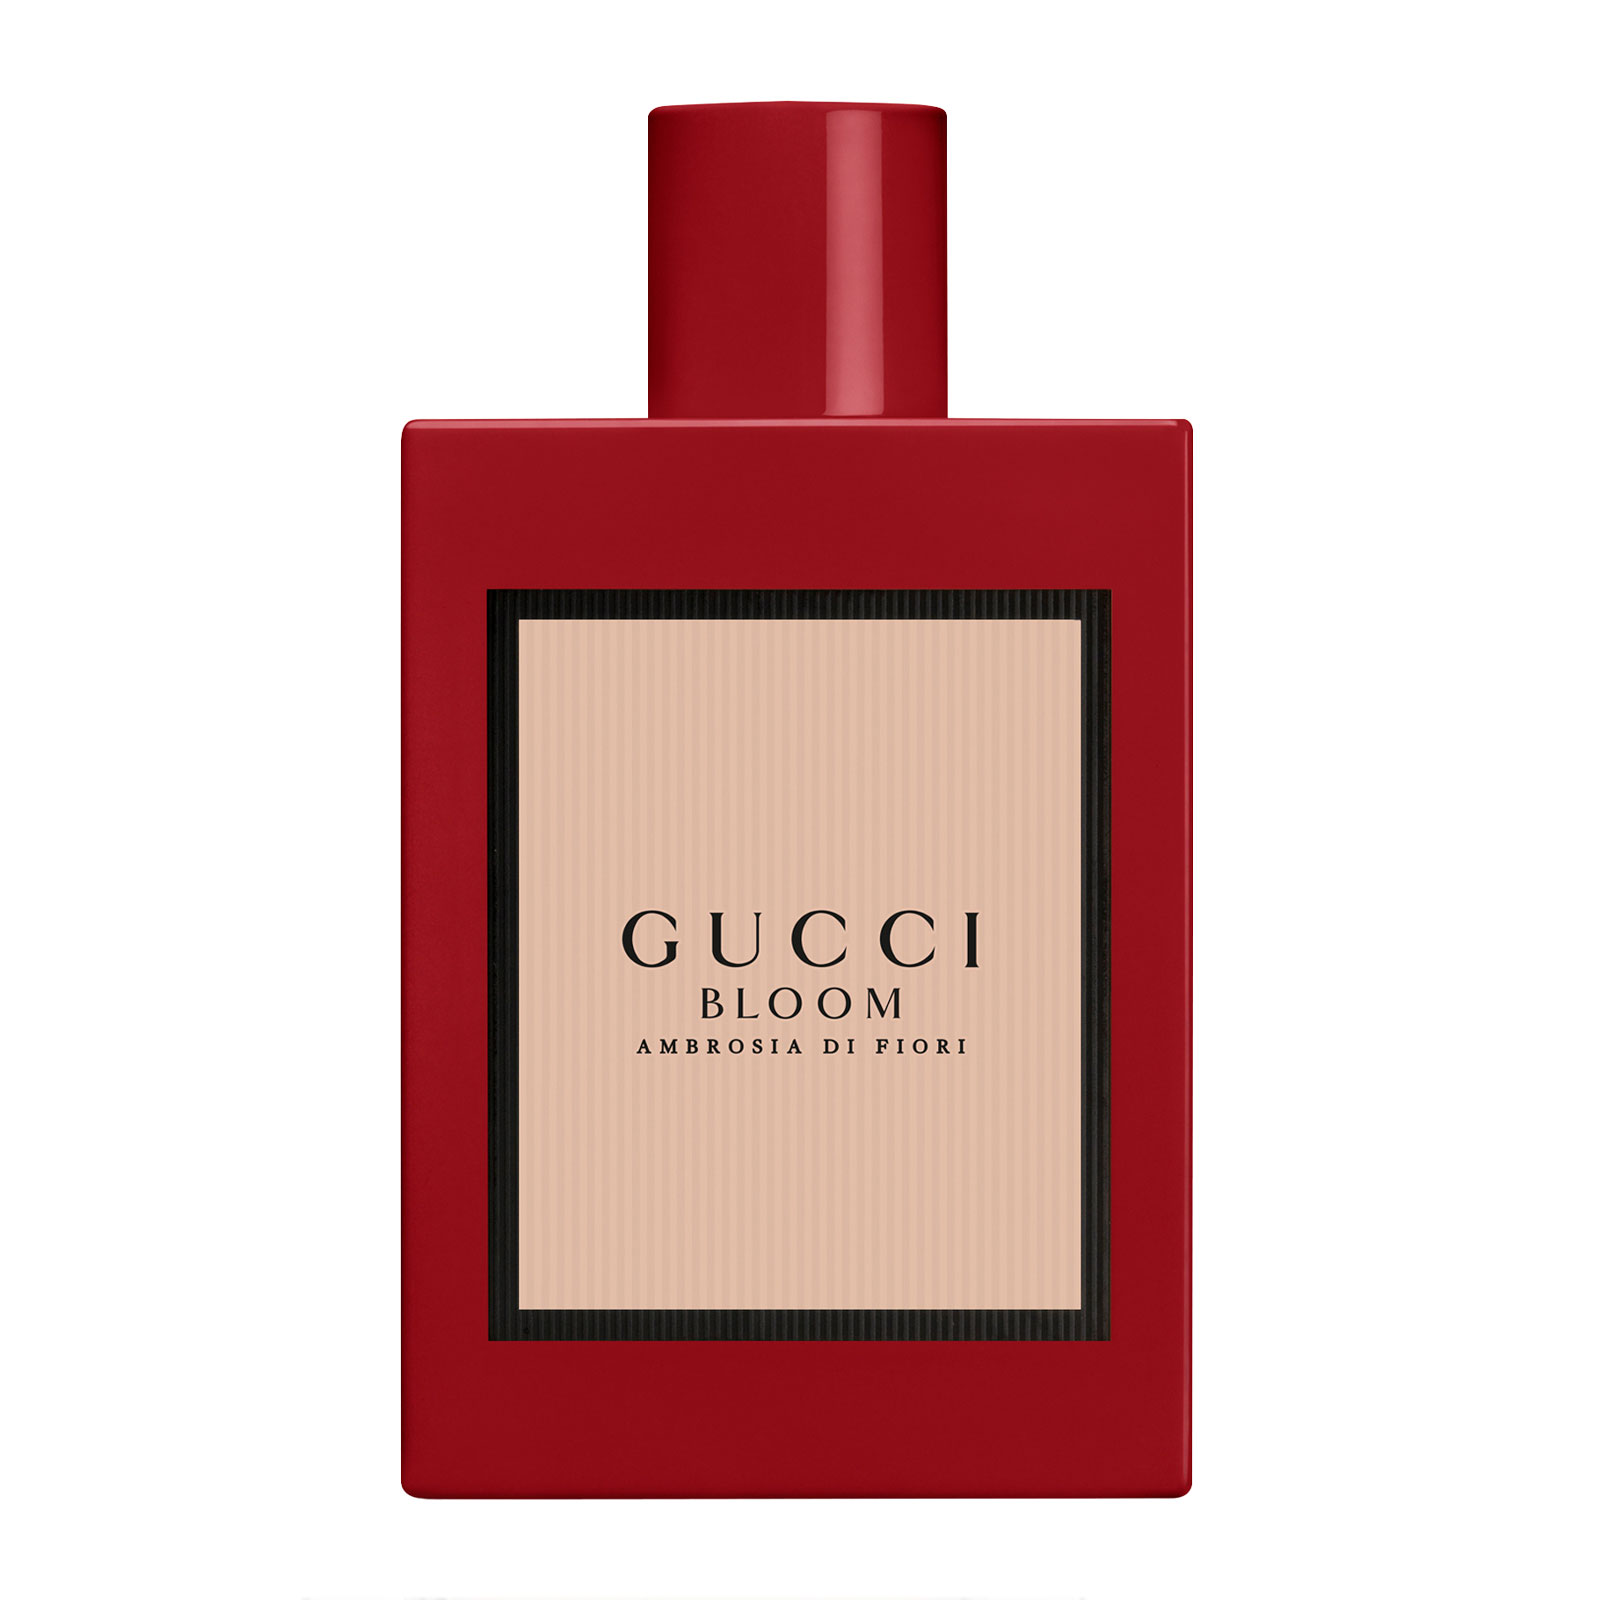 Gucci Bloom Ambrosia Di Fiori For Her Eau De Parfum 100Ml